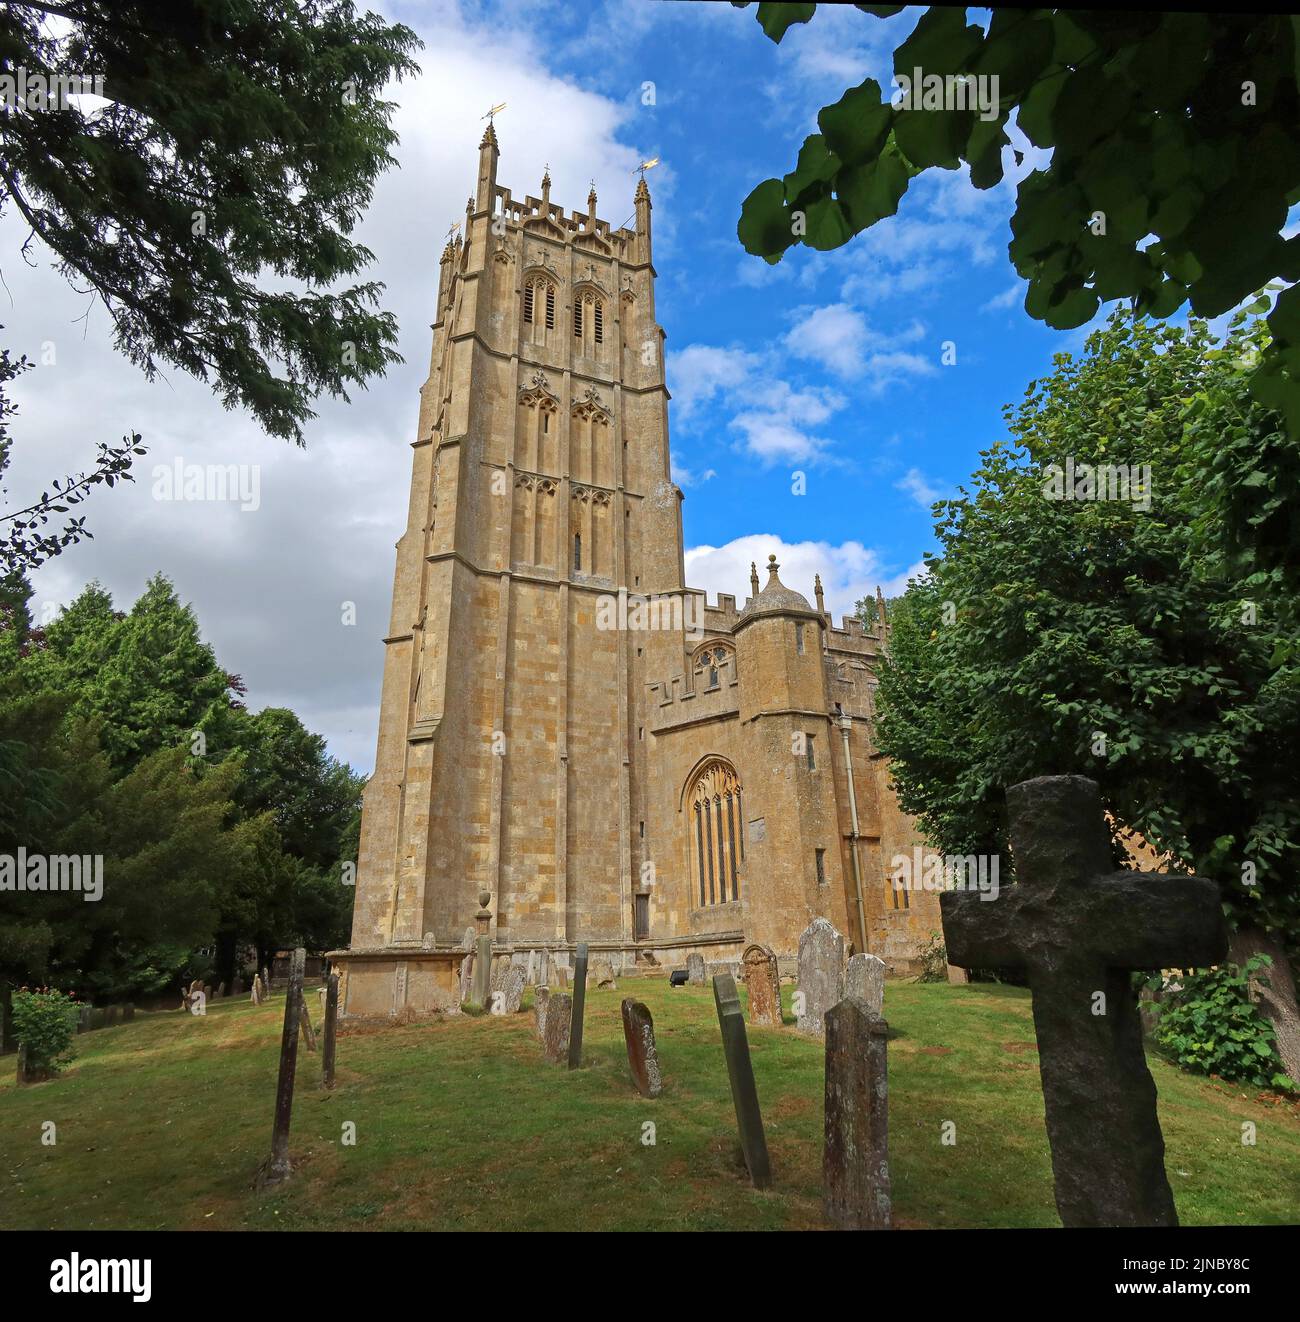 St James laine église tour, Chipping Campden, Cotswolds, Oxfordshire, Angleterre, Royaume-Uni, GL55 6AA Banque D'Images